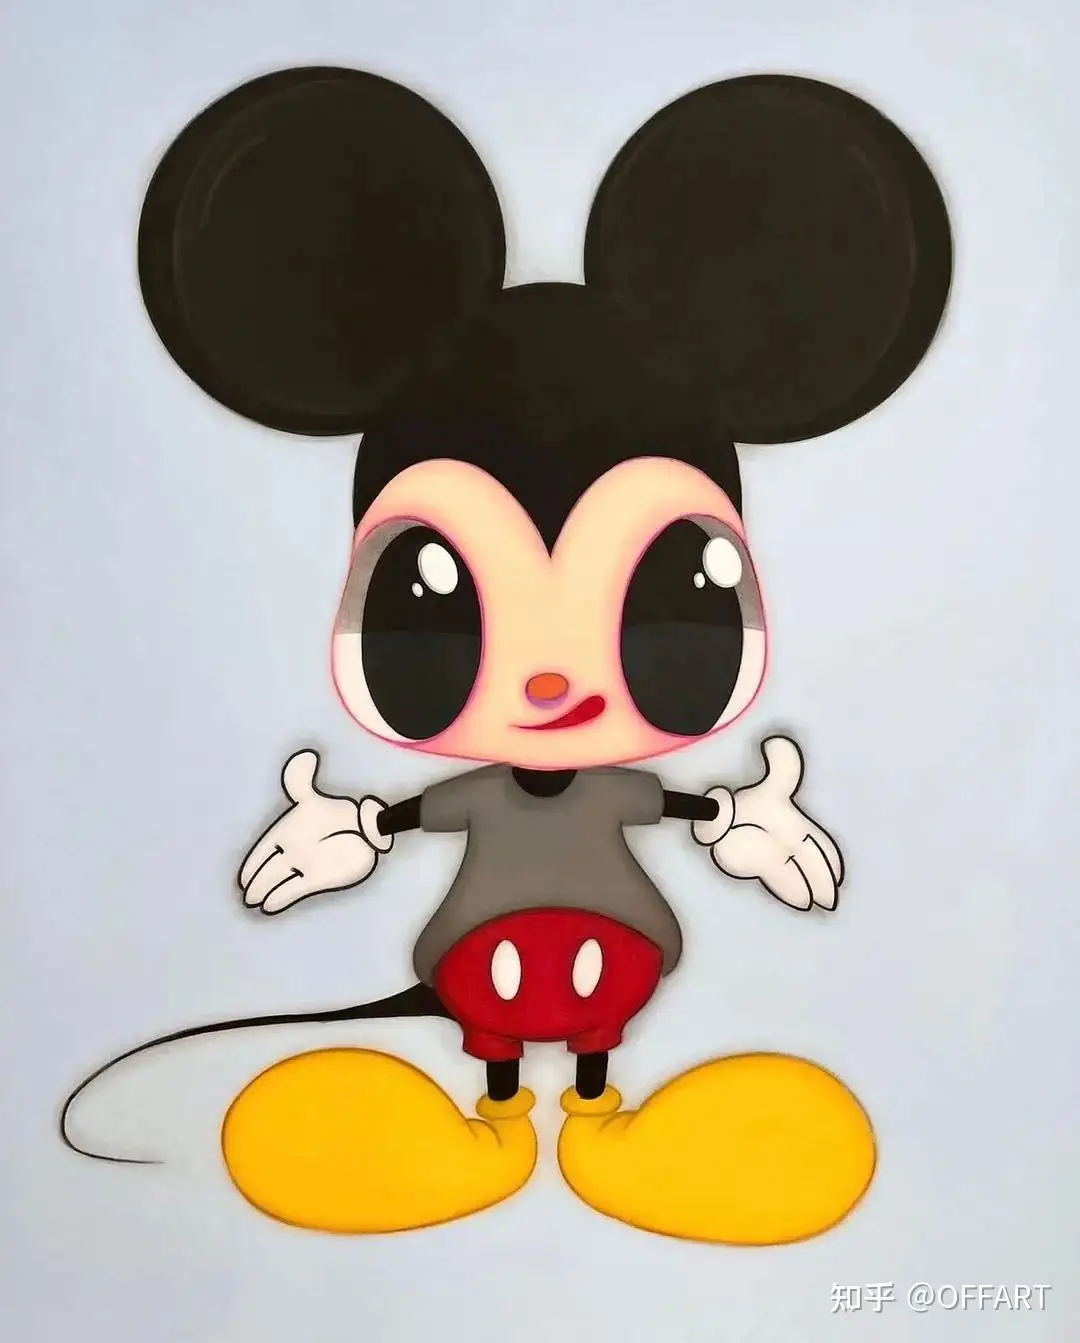 NANZUKA画廊联合迪士尼举办米老鼠主题艺术家群展《Mickey Mouse Now